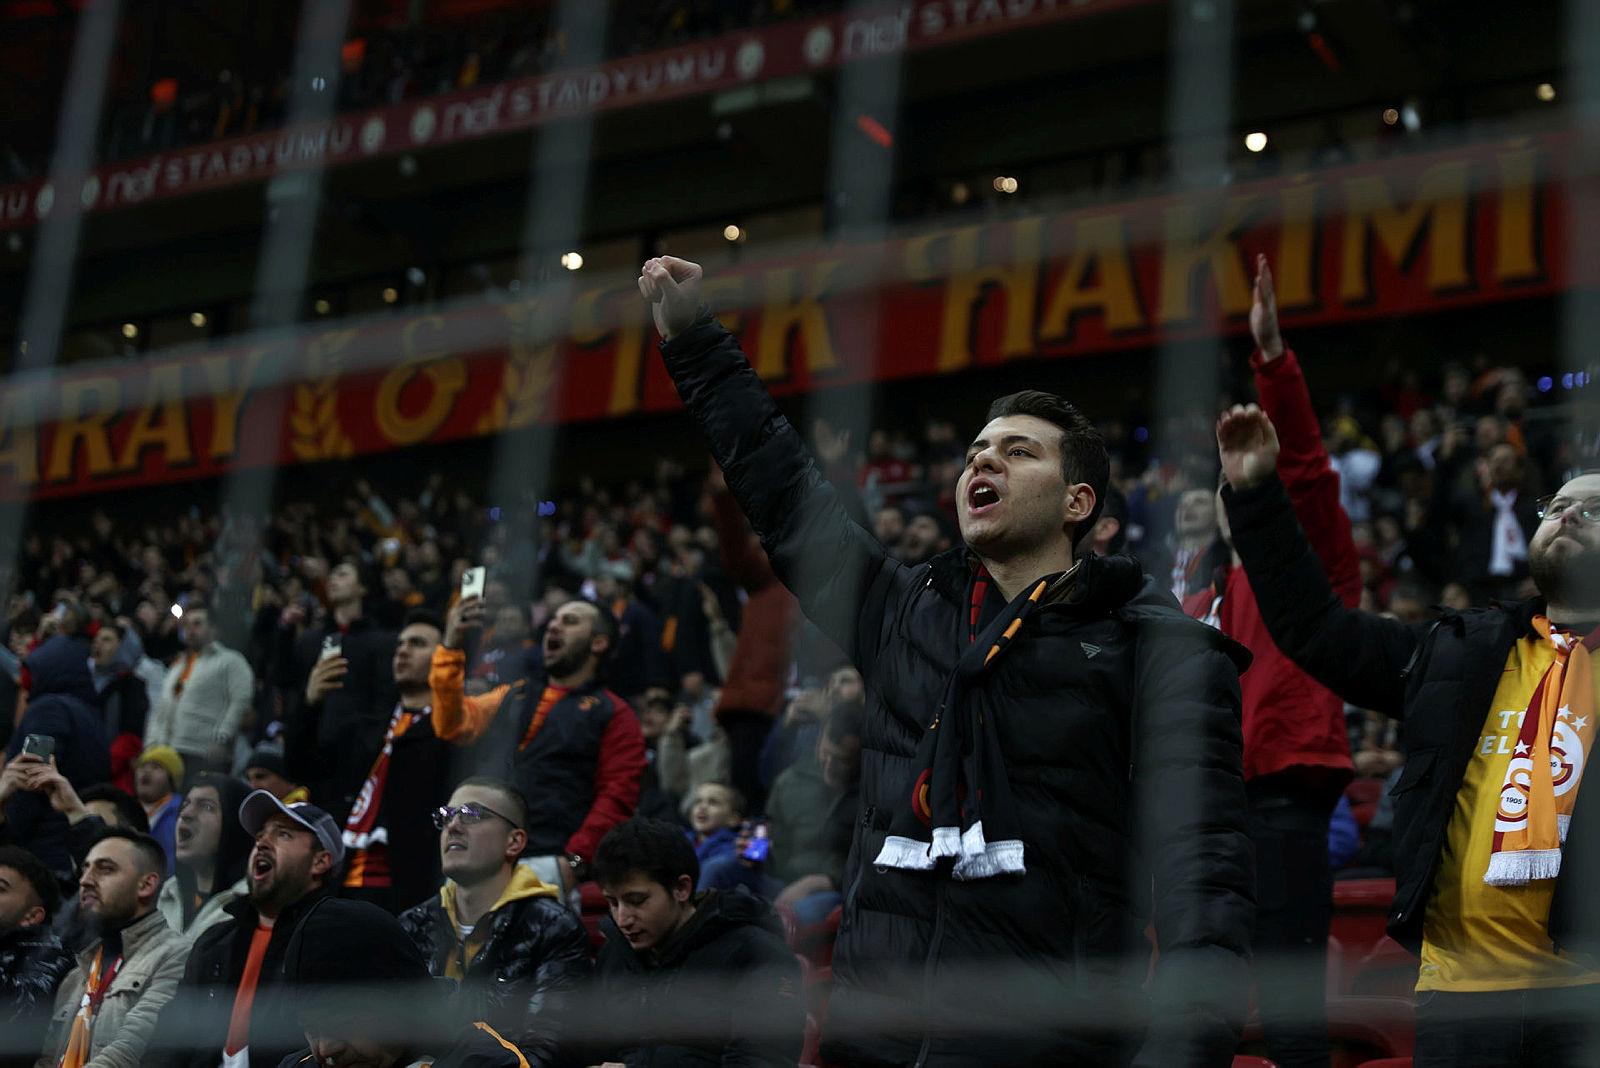 Galatasaray Başakşehir maçı sonrası Emre Belözoğlu’dan kırmızı kart açıklaması!